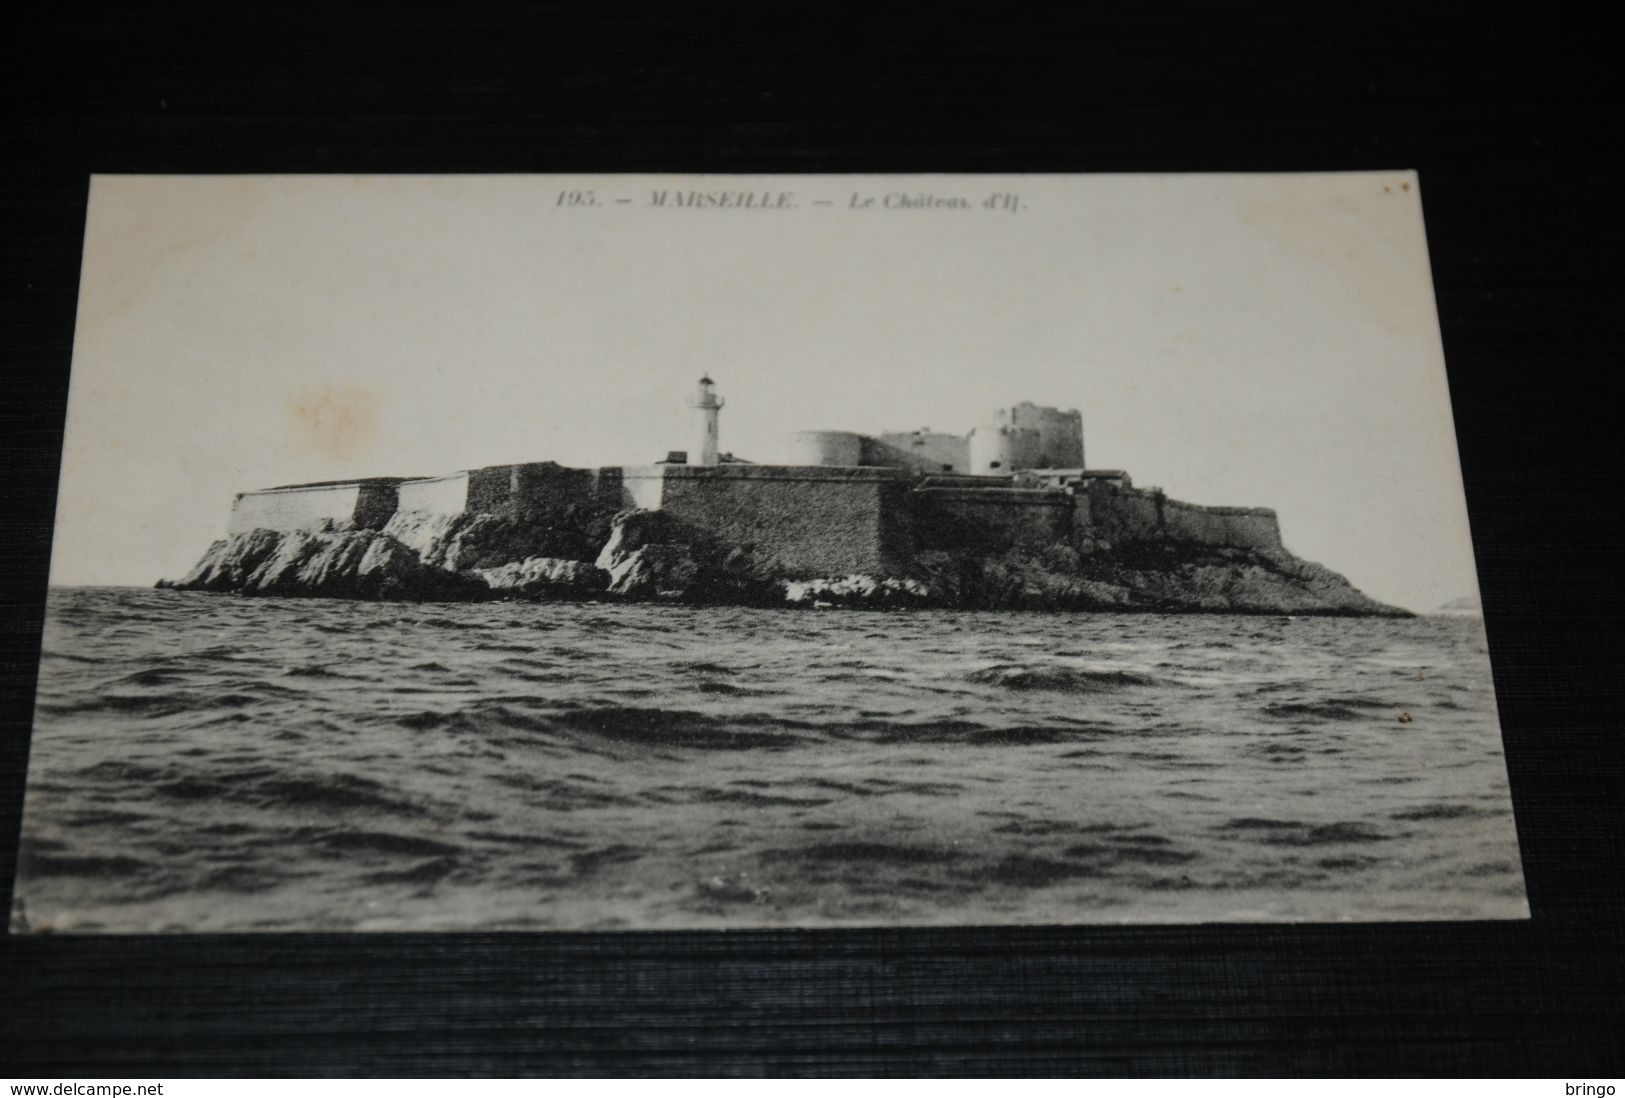 17691-           MARSEILLE, LE CHATEAU D'IL - Castello Di If, Isole ...